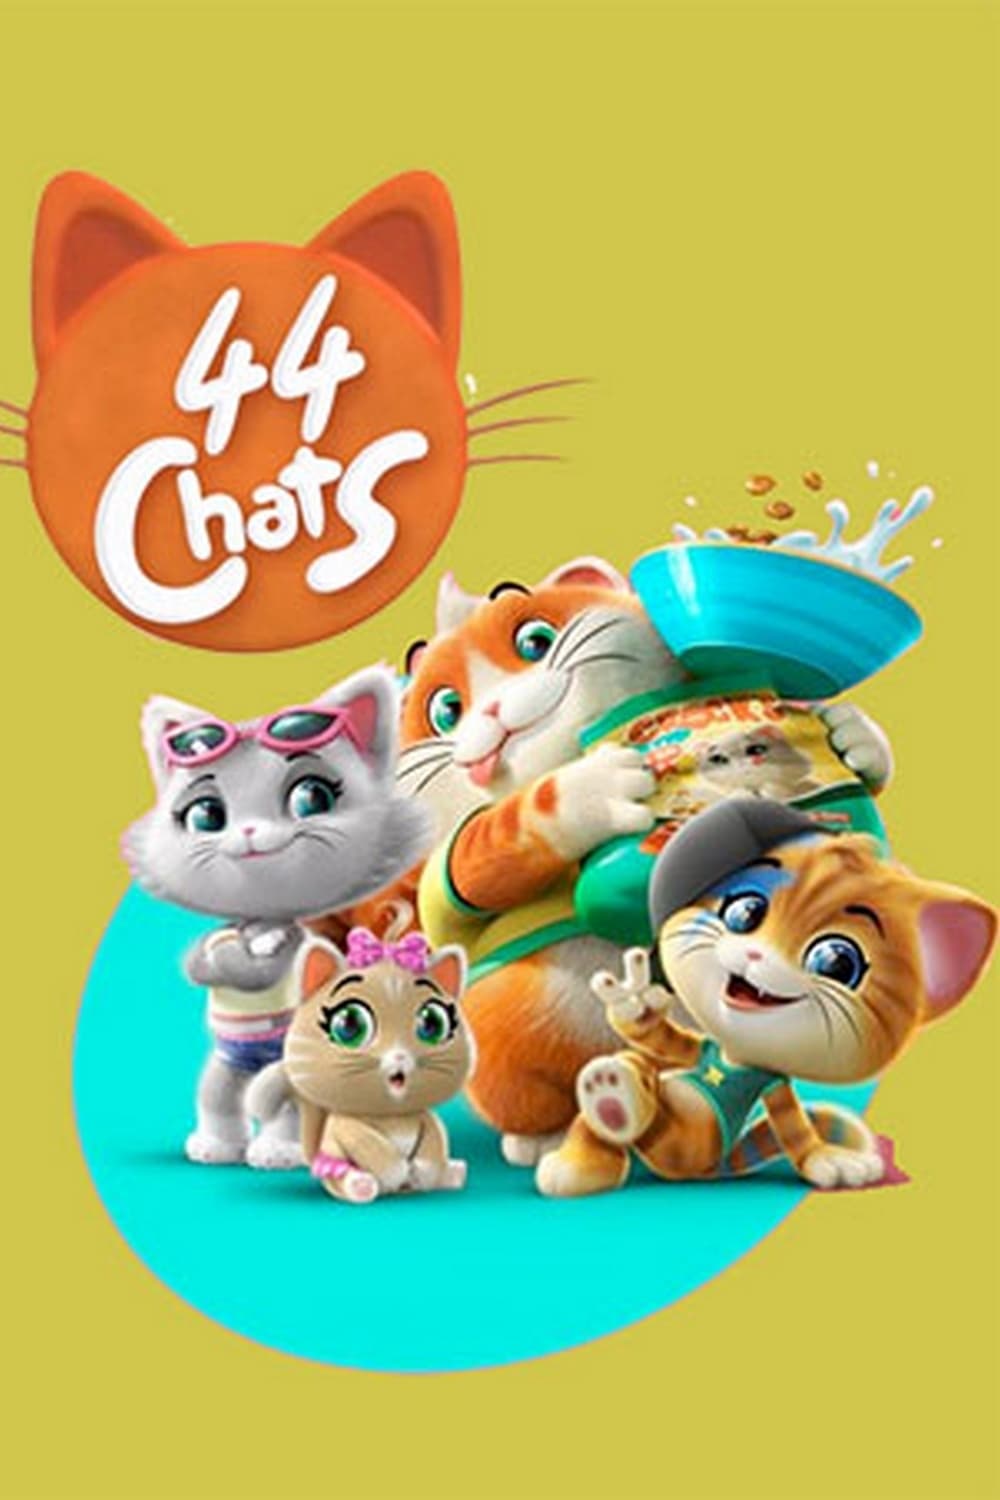 Affiche de la série 44 chats